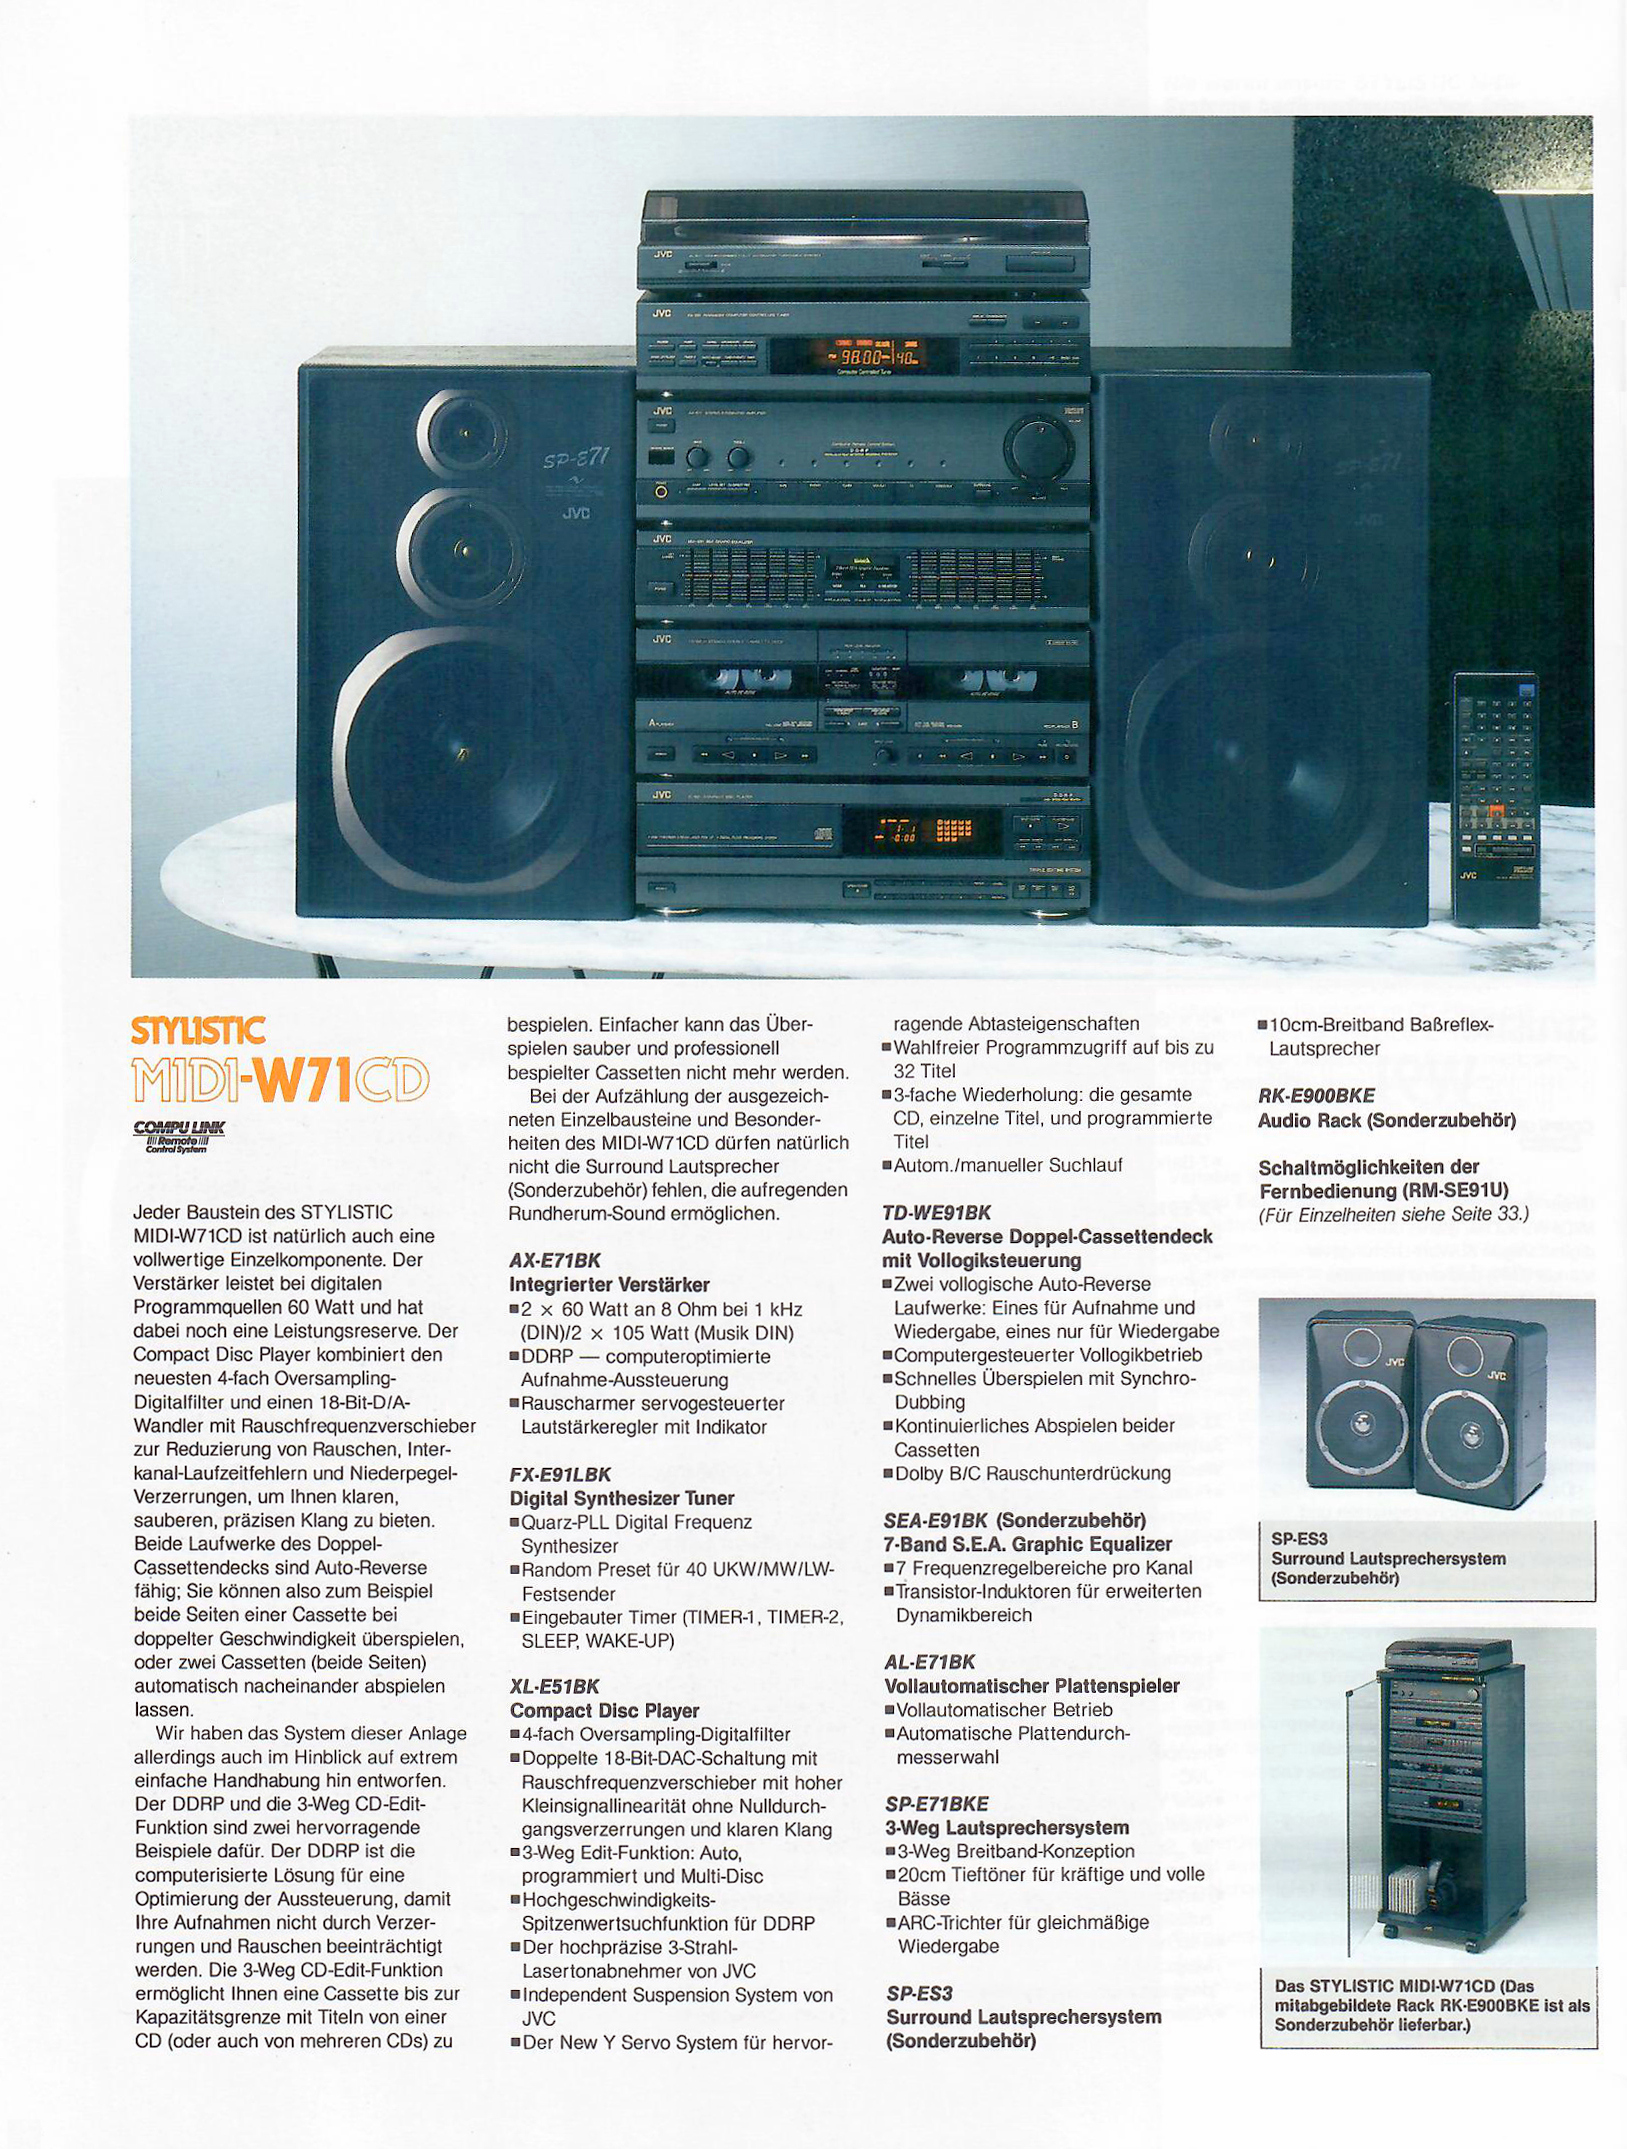 JVC Midi W-71 CD-Prospekt-19892.jpg